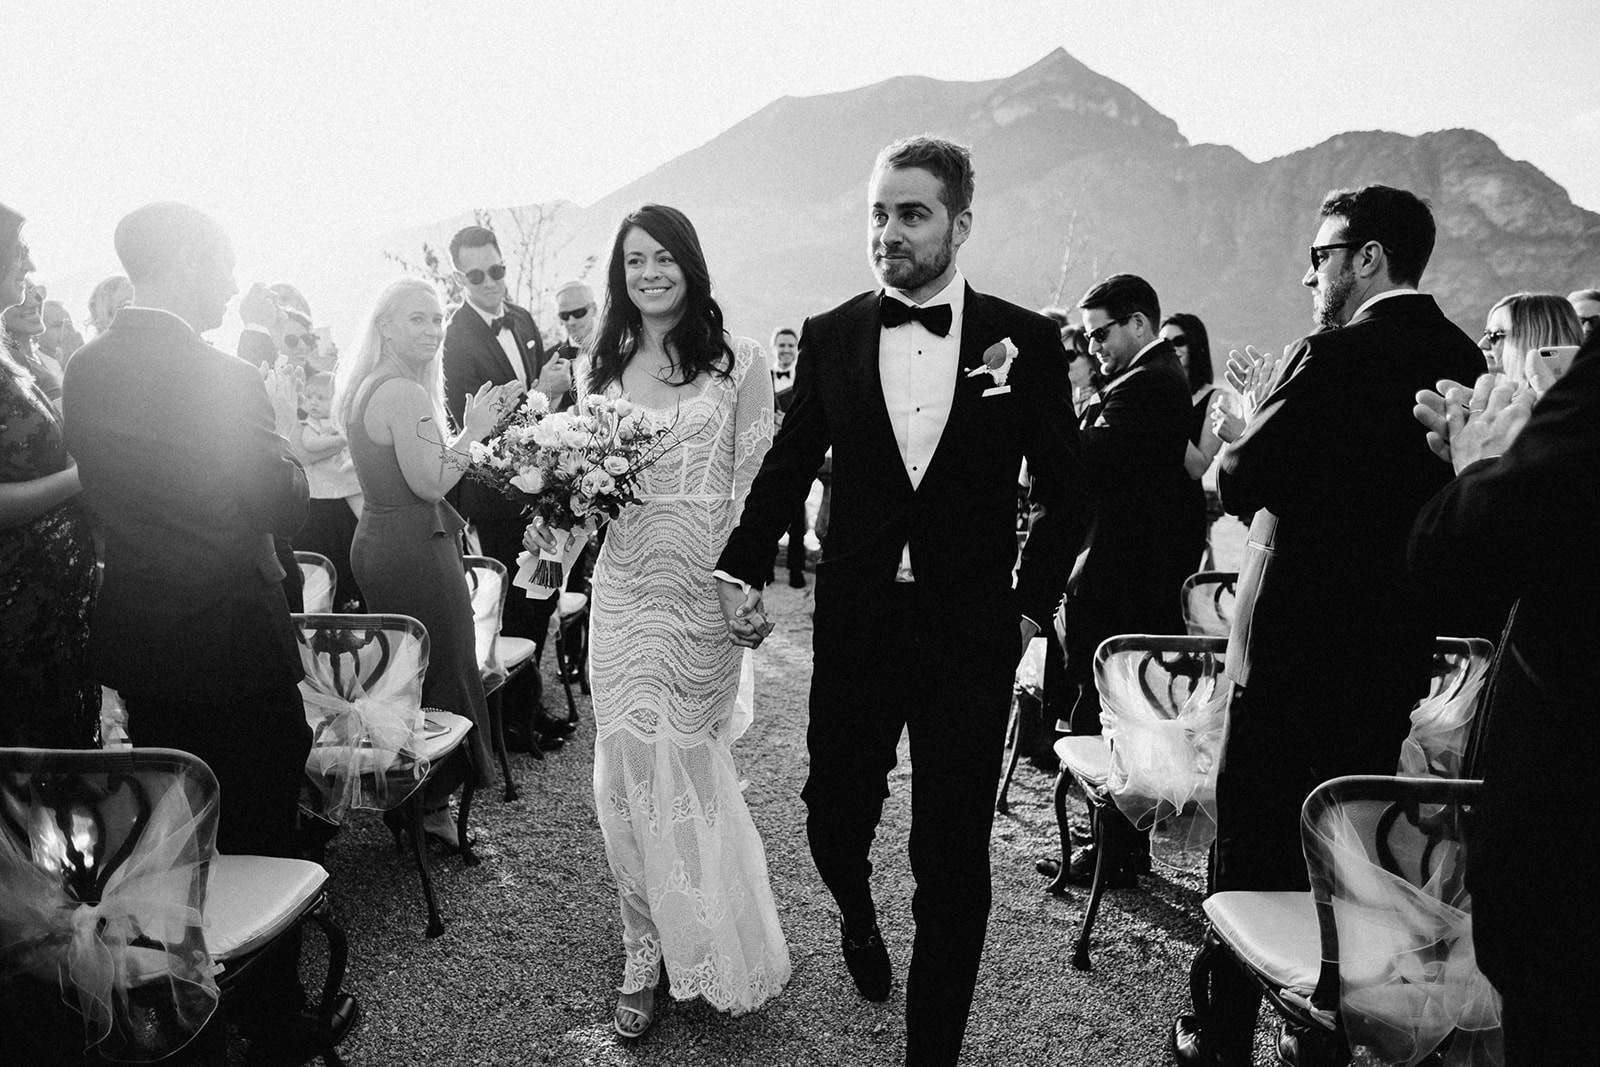 Wedding Ceremony in Como - Wedding in Como Lake, Villa Serbelloni